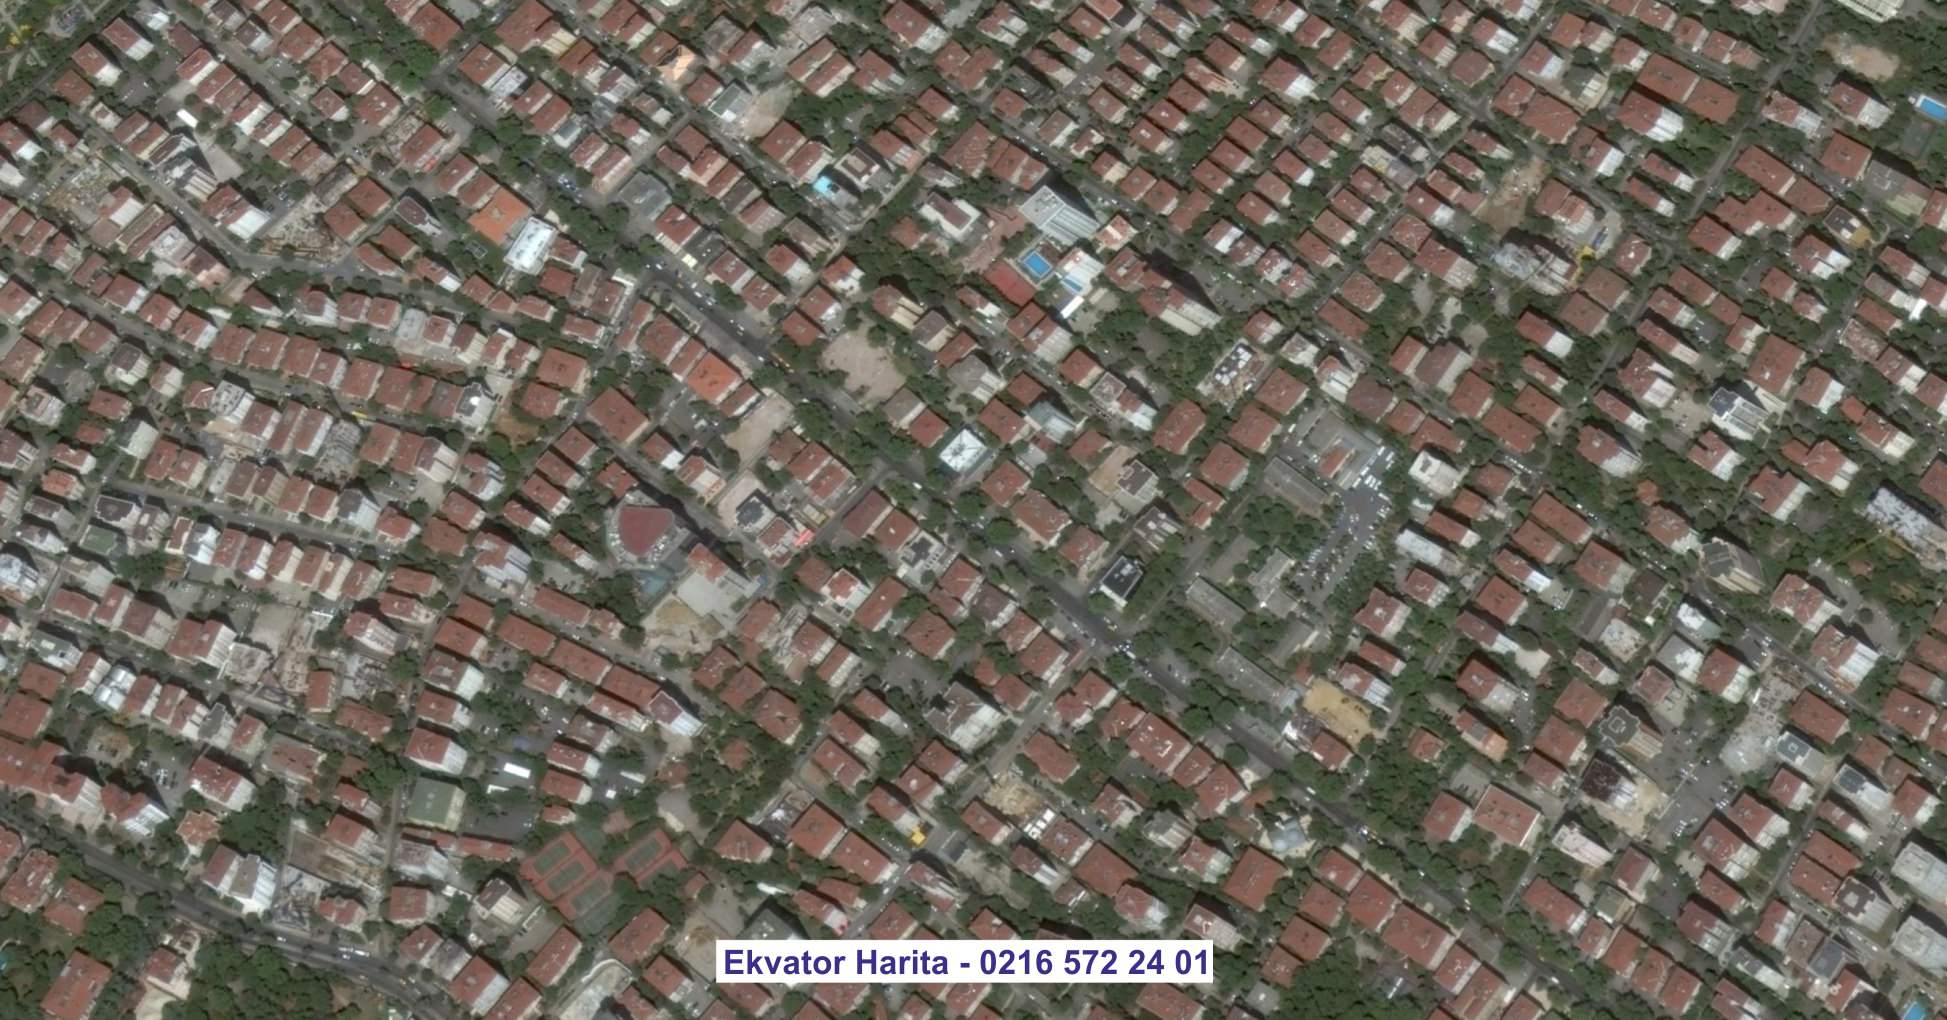 Amasya Uydu Görüntüsü Örnek Fotoğrafı